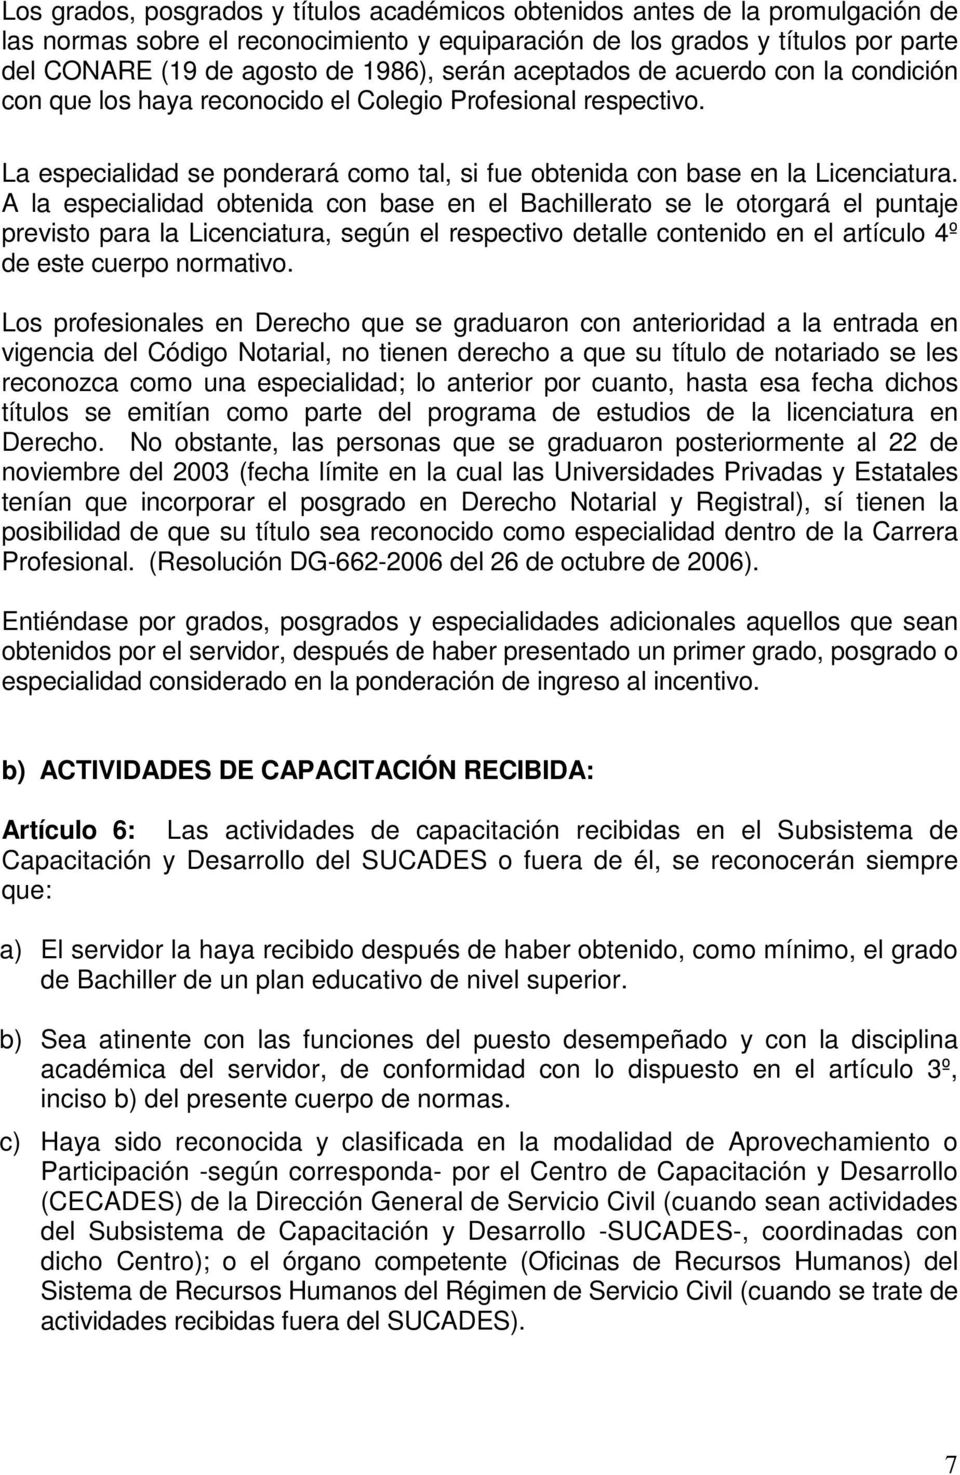 A la especialidad obtenida con base en el Bachillerato se le otorgará el puntaje previsto para la Licenciatura, según el respectivo detalle contenido en el artículo 4º de este cuerpo normativo.